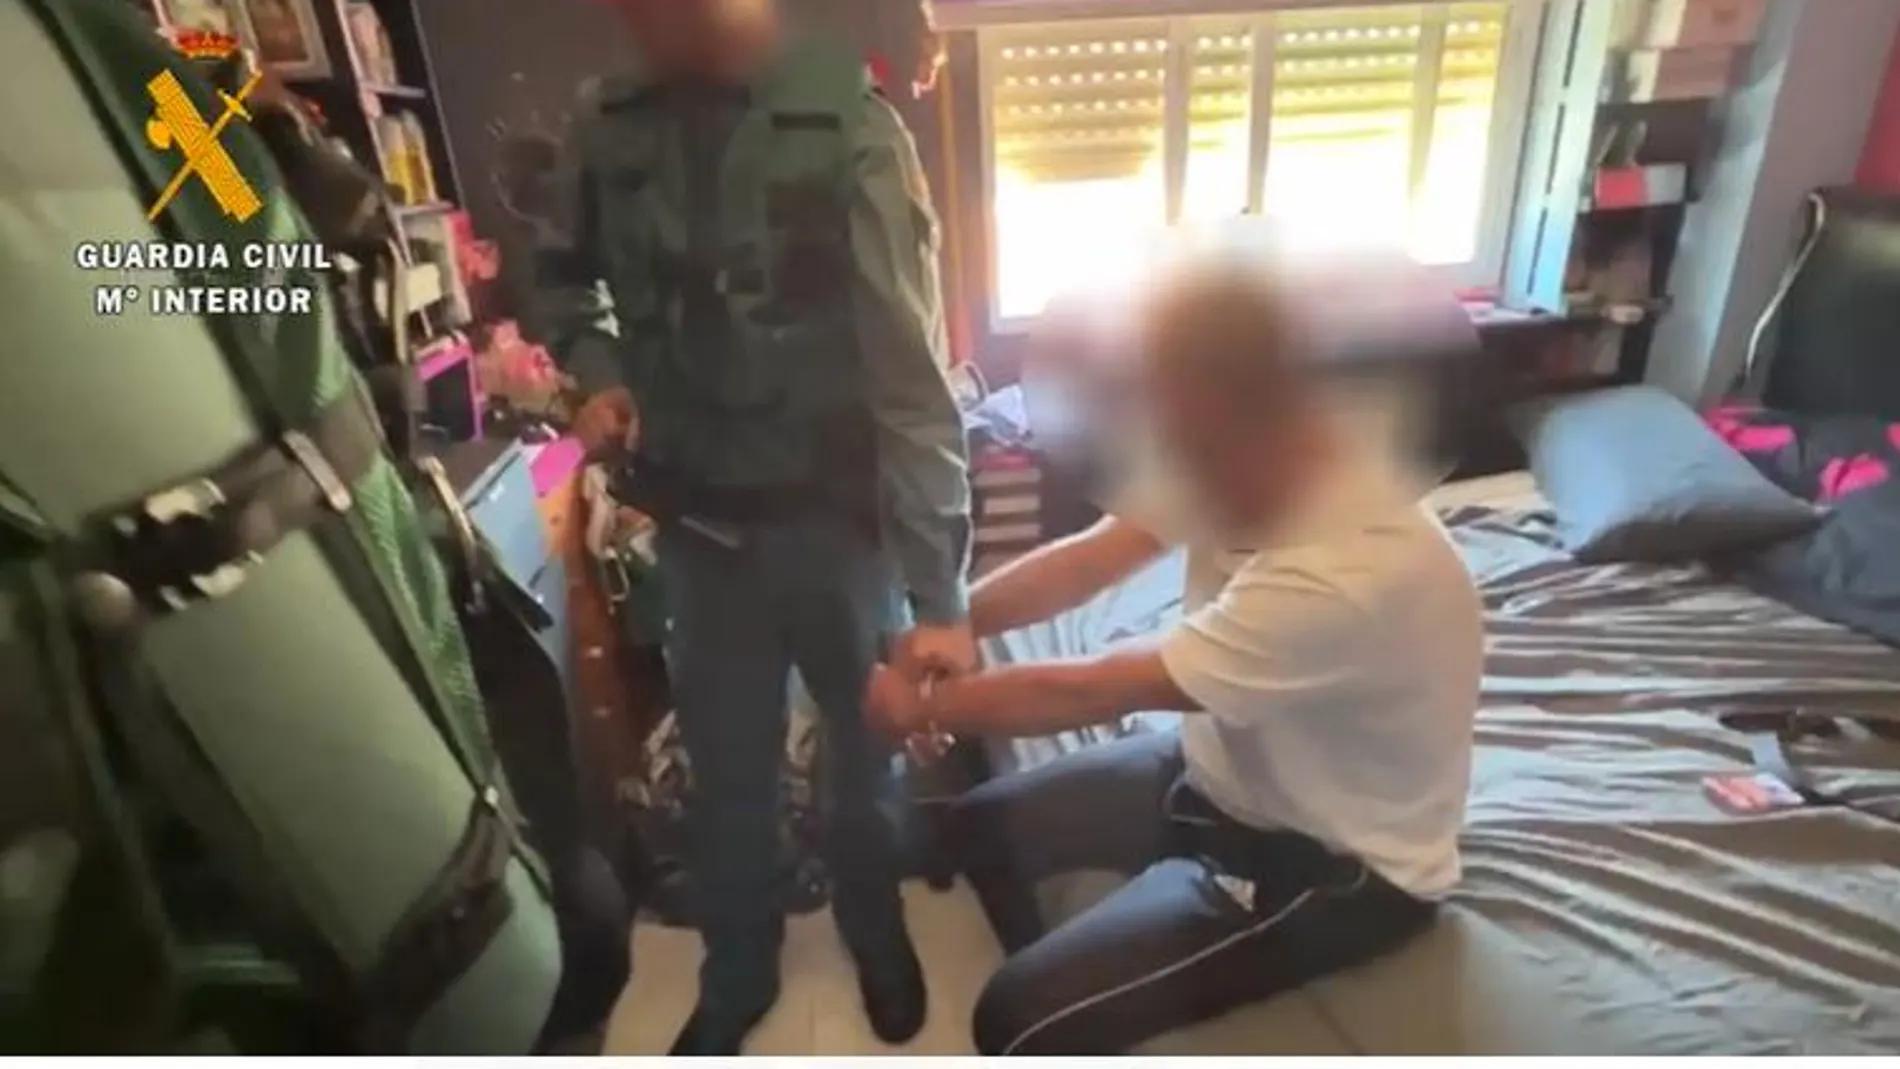 Captura del momento en el que el francotirador es detenido por la Guardia Civil